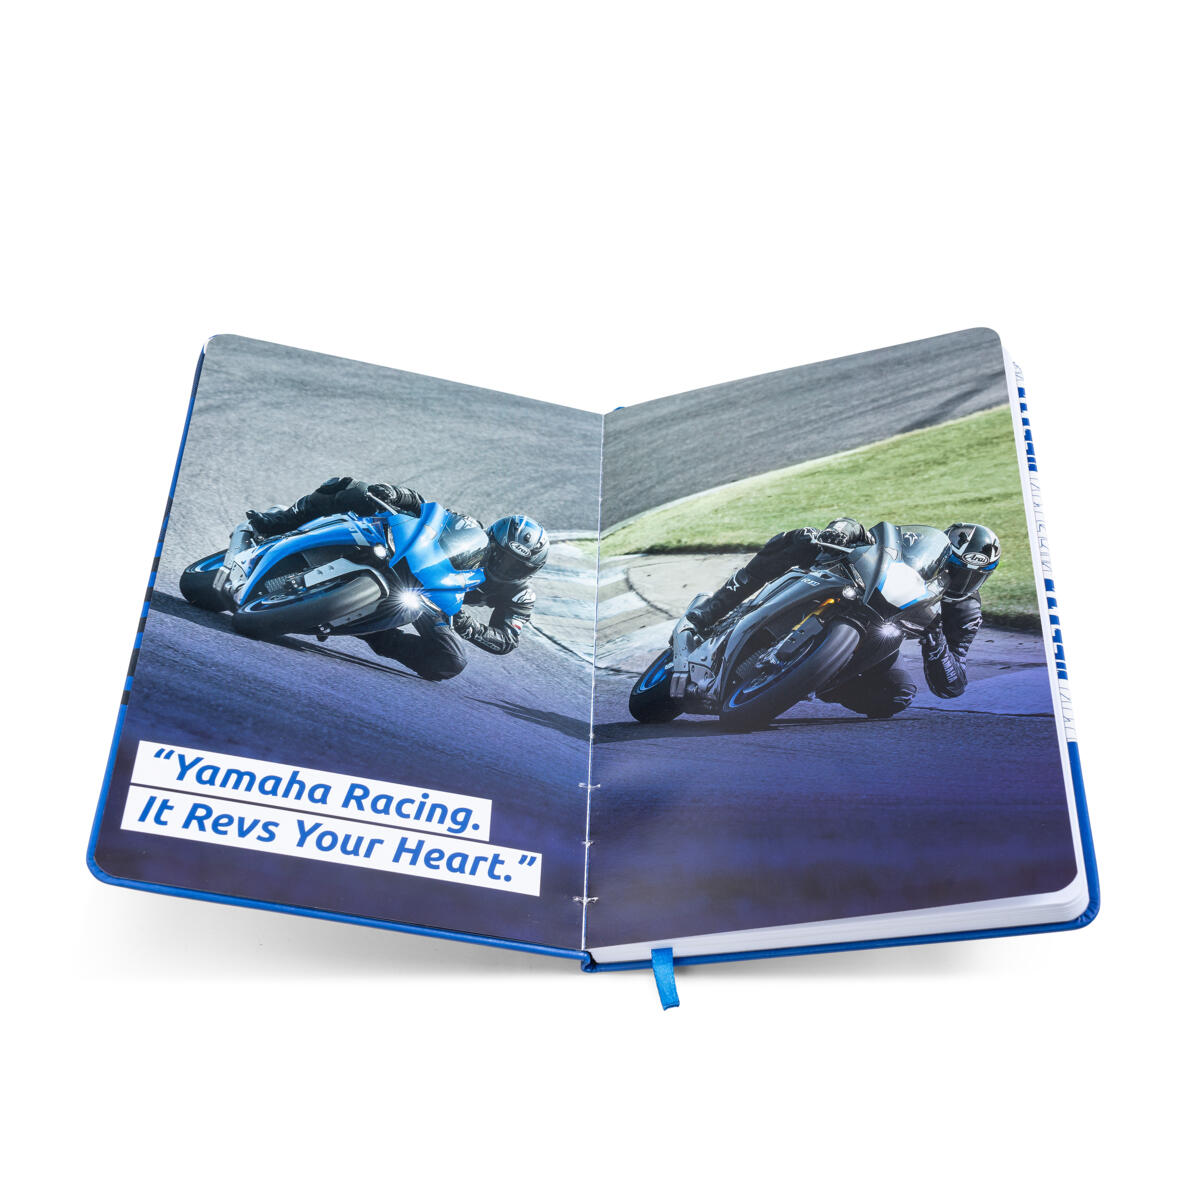 Libreta de Yamaha Racing de diseño especial. Tapa dura de cuero de PU y contenido personalizado. Un elemento imprescindible para todos los aficionados a las carreras.